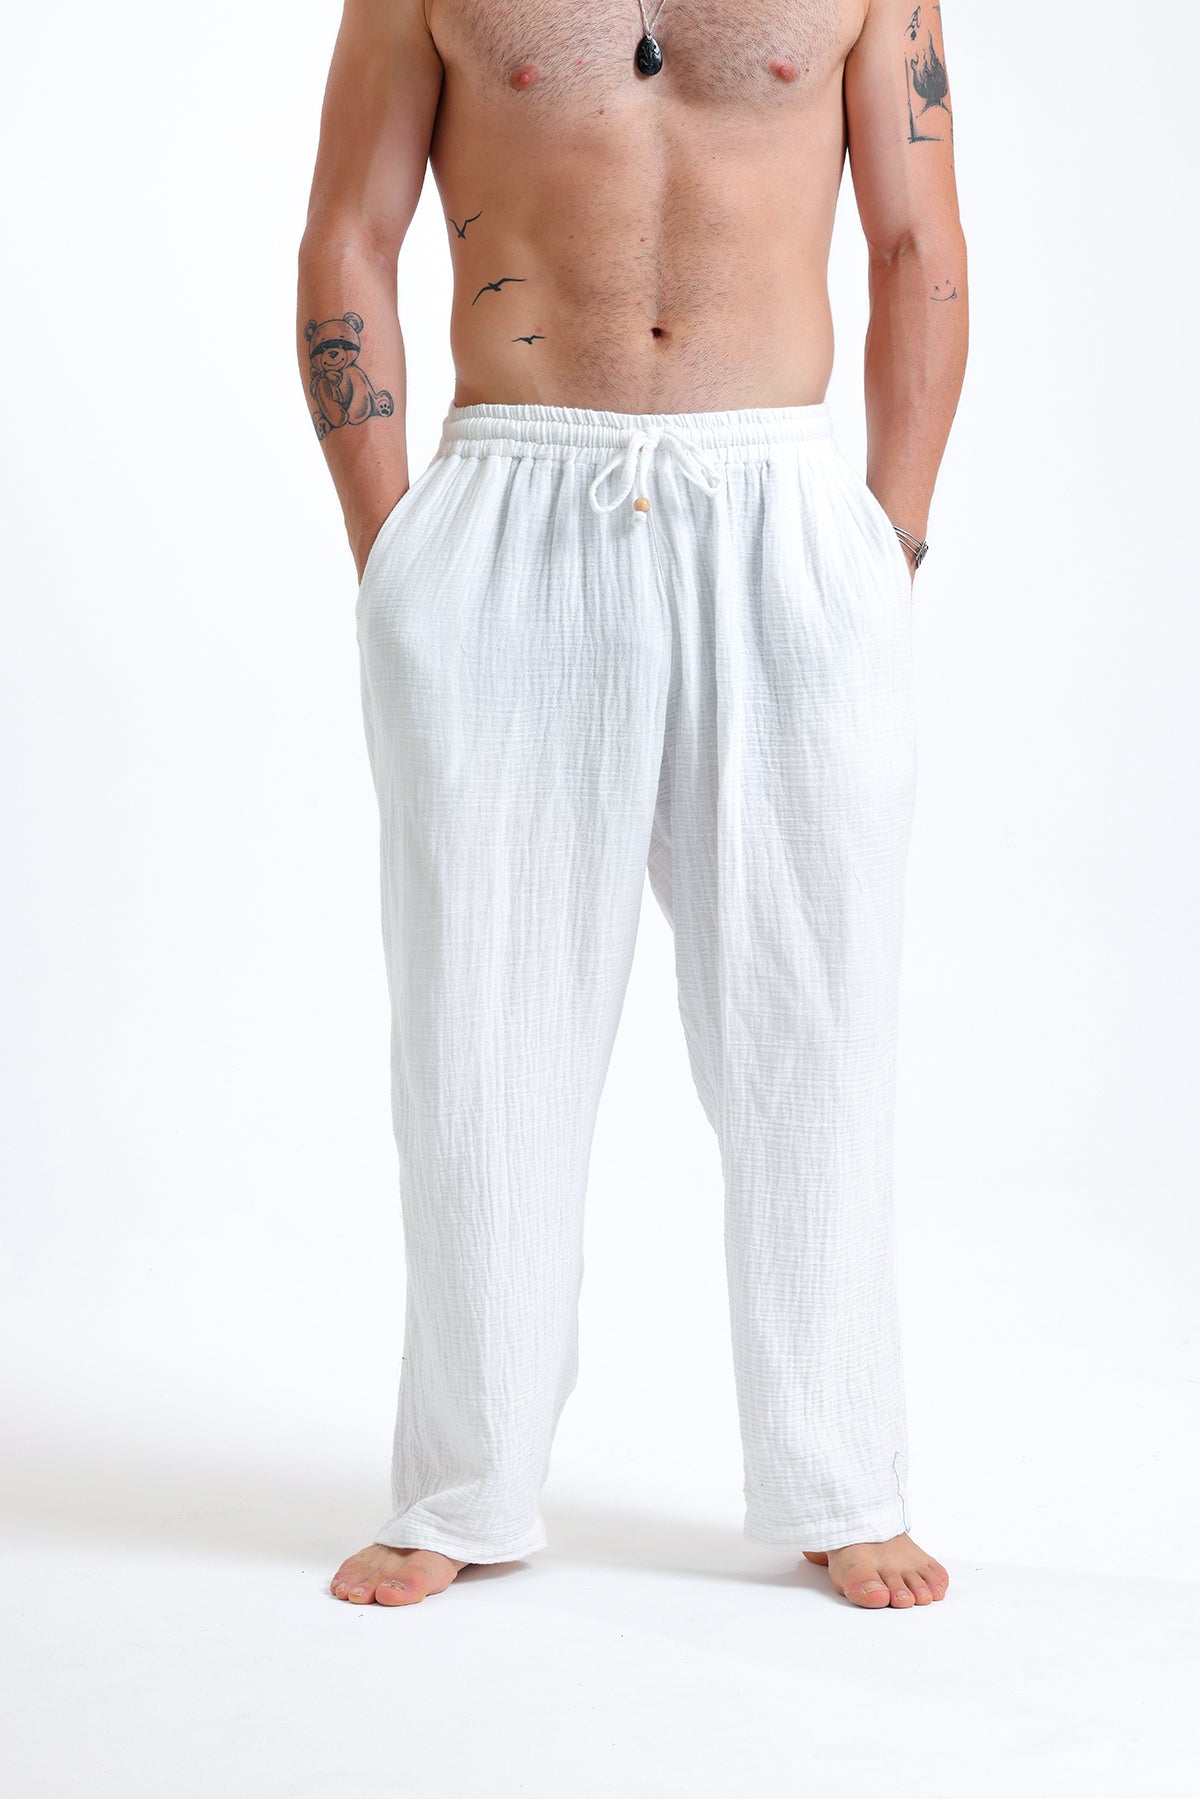 Alessio de Sole 100% Cotton White Trousers - Men